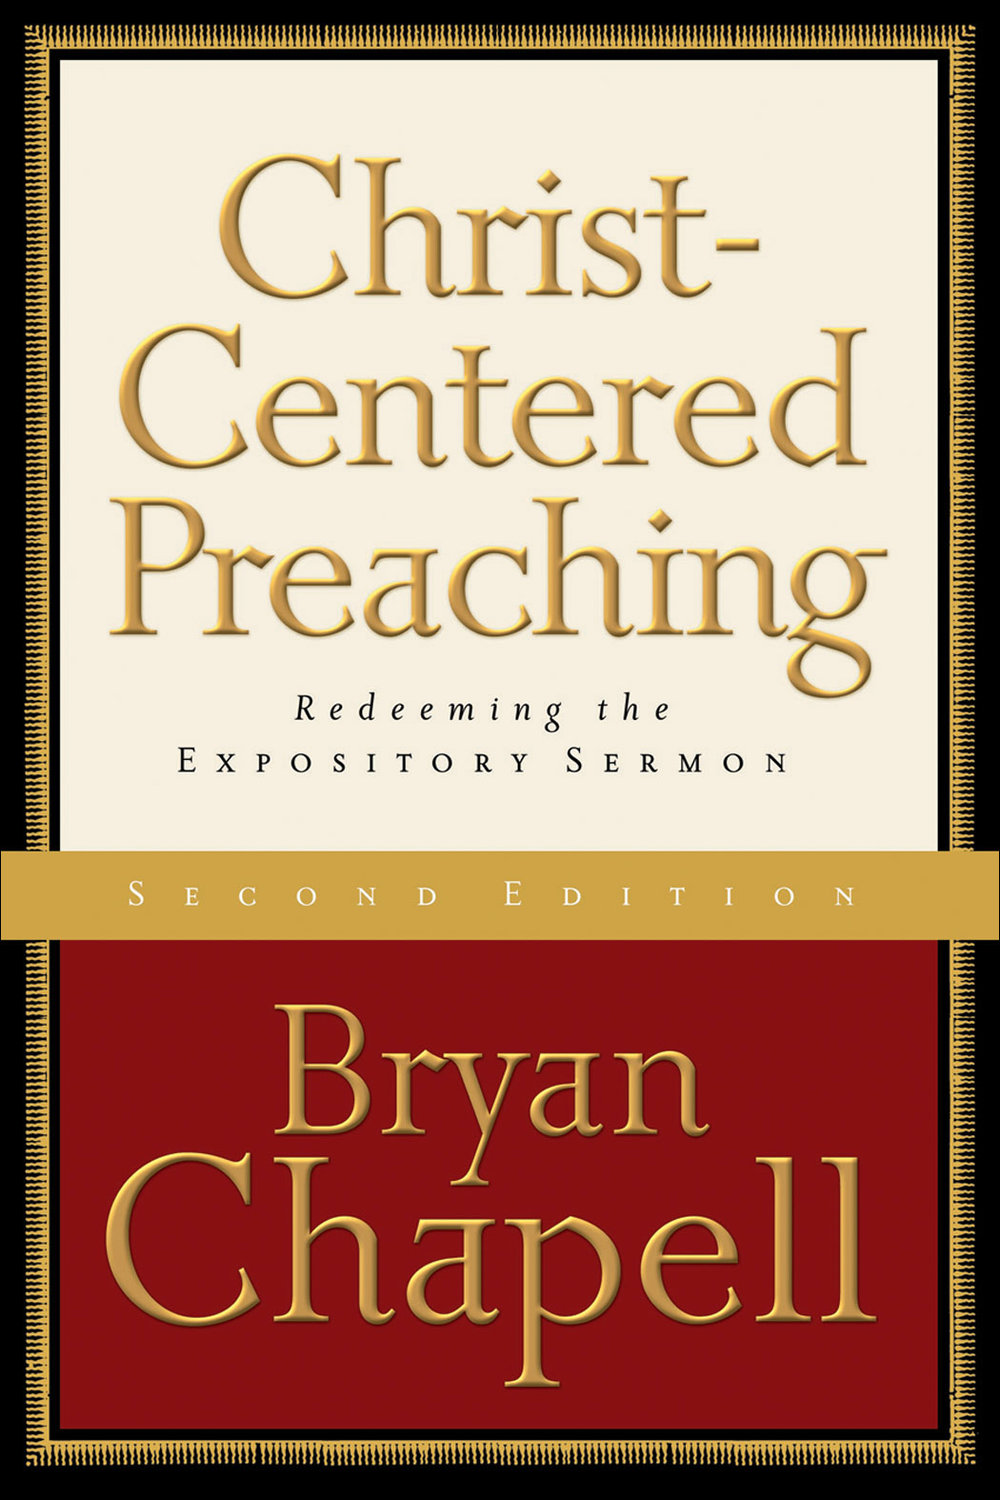 Christ-centered-preaching1.jpg